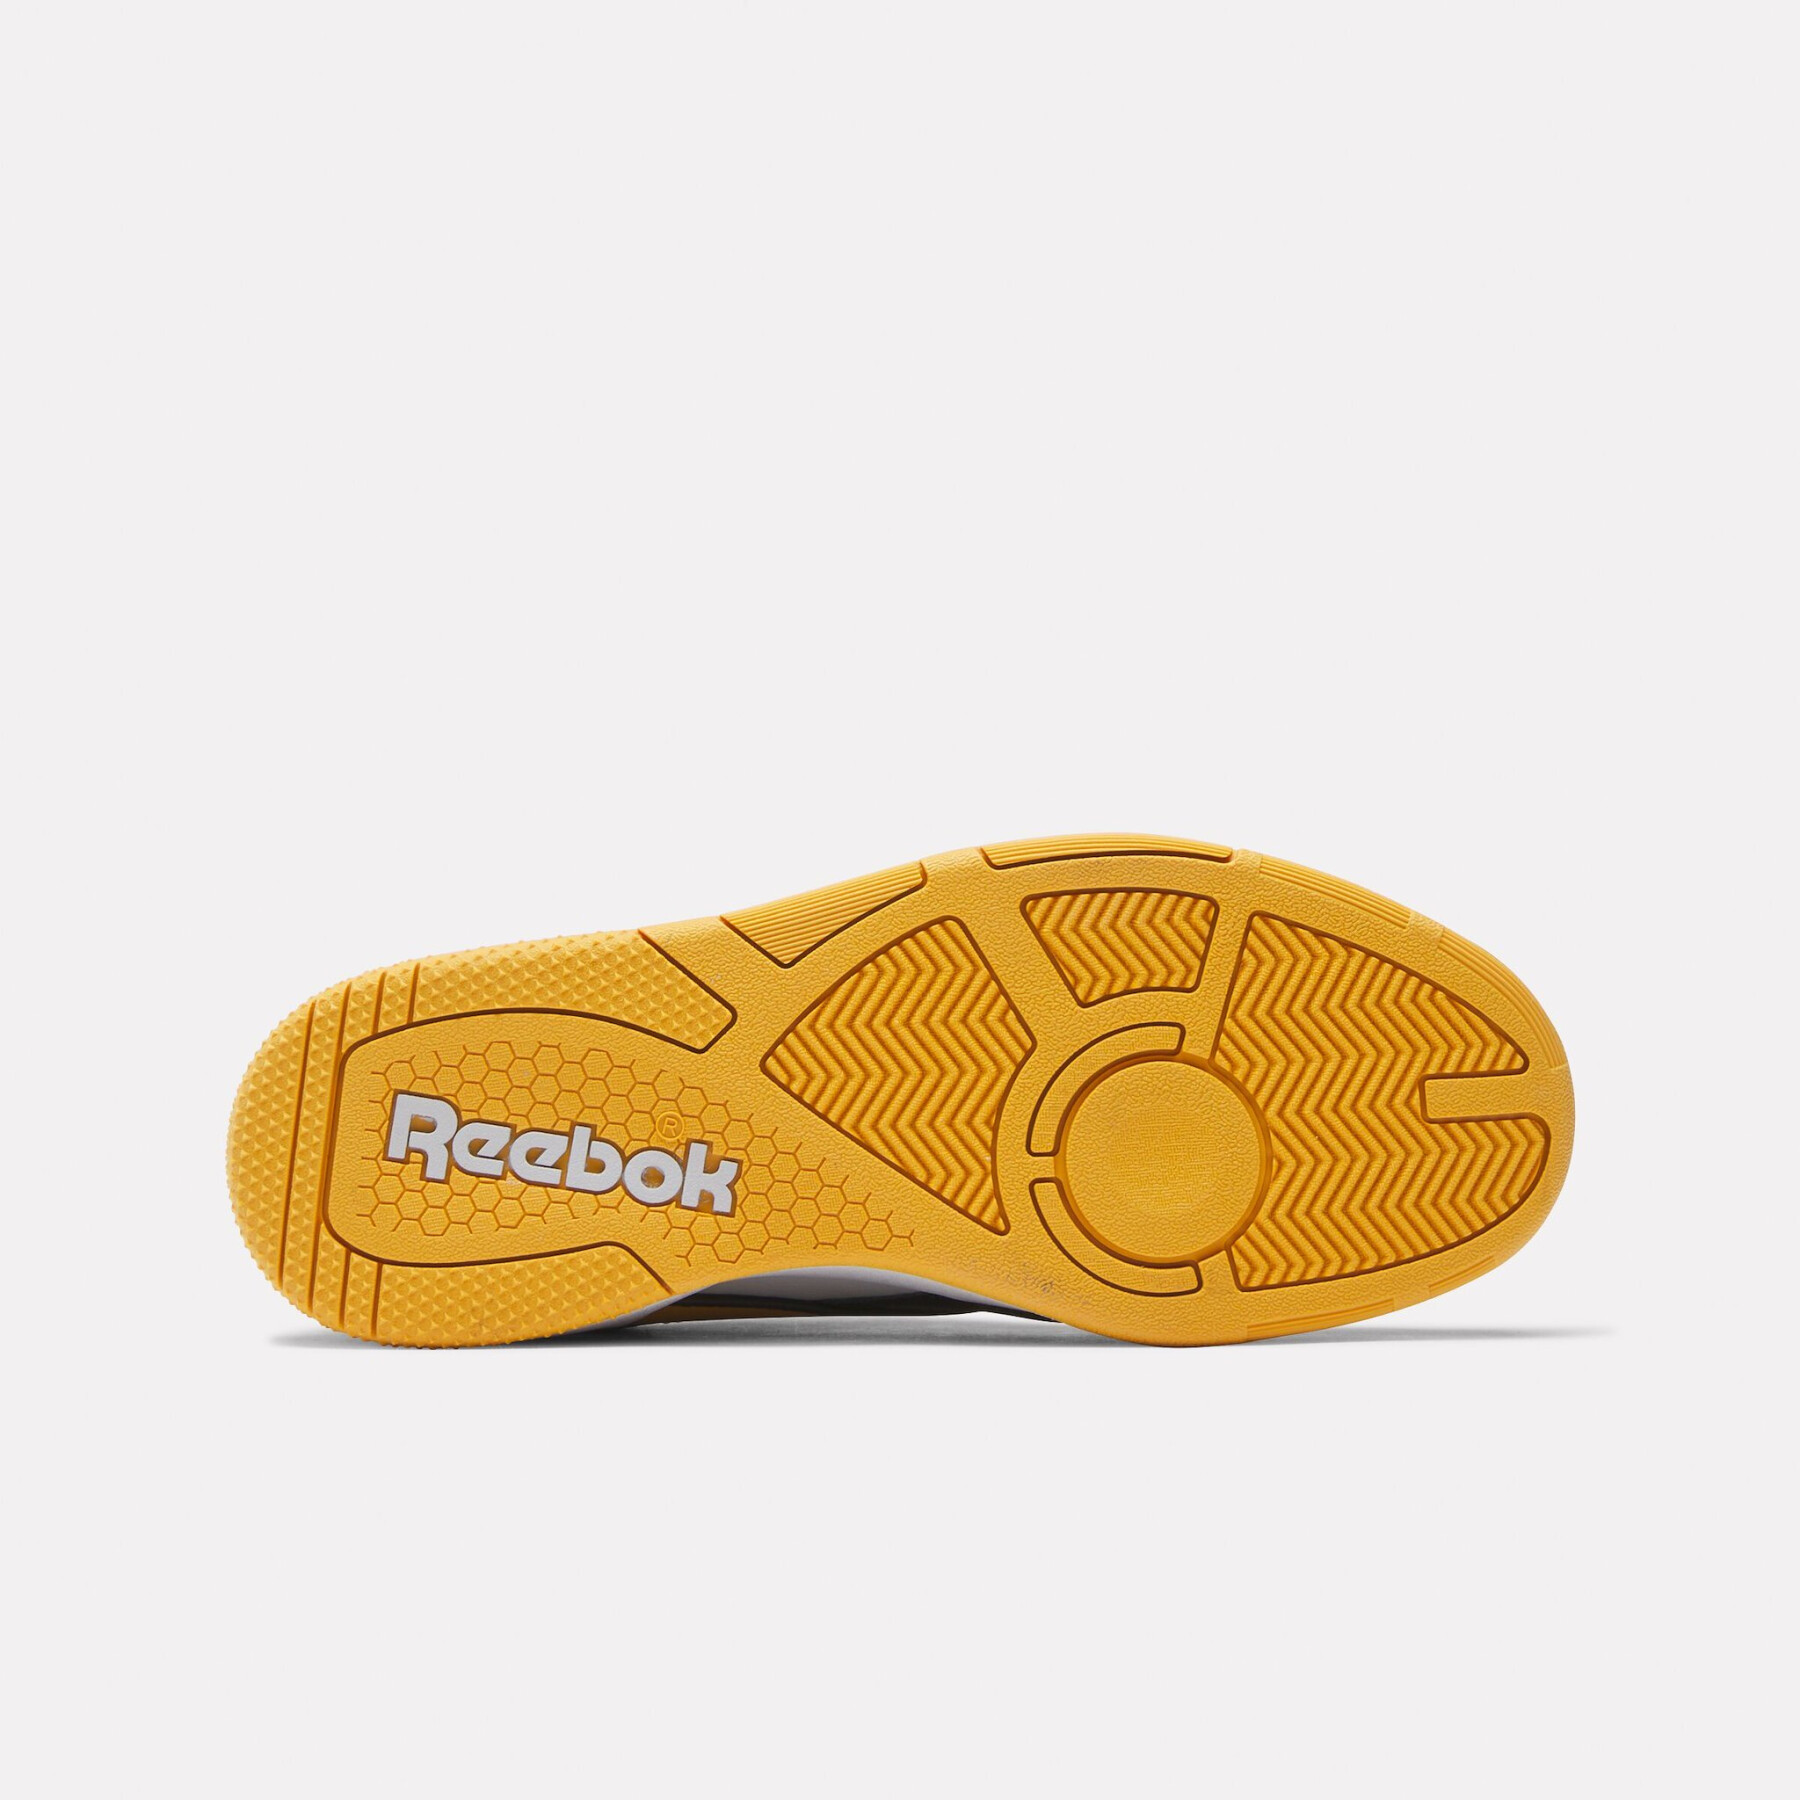 Children's sneakers Reebok BB 4000 II